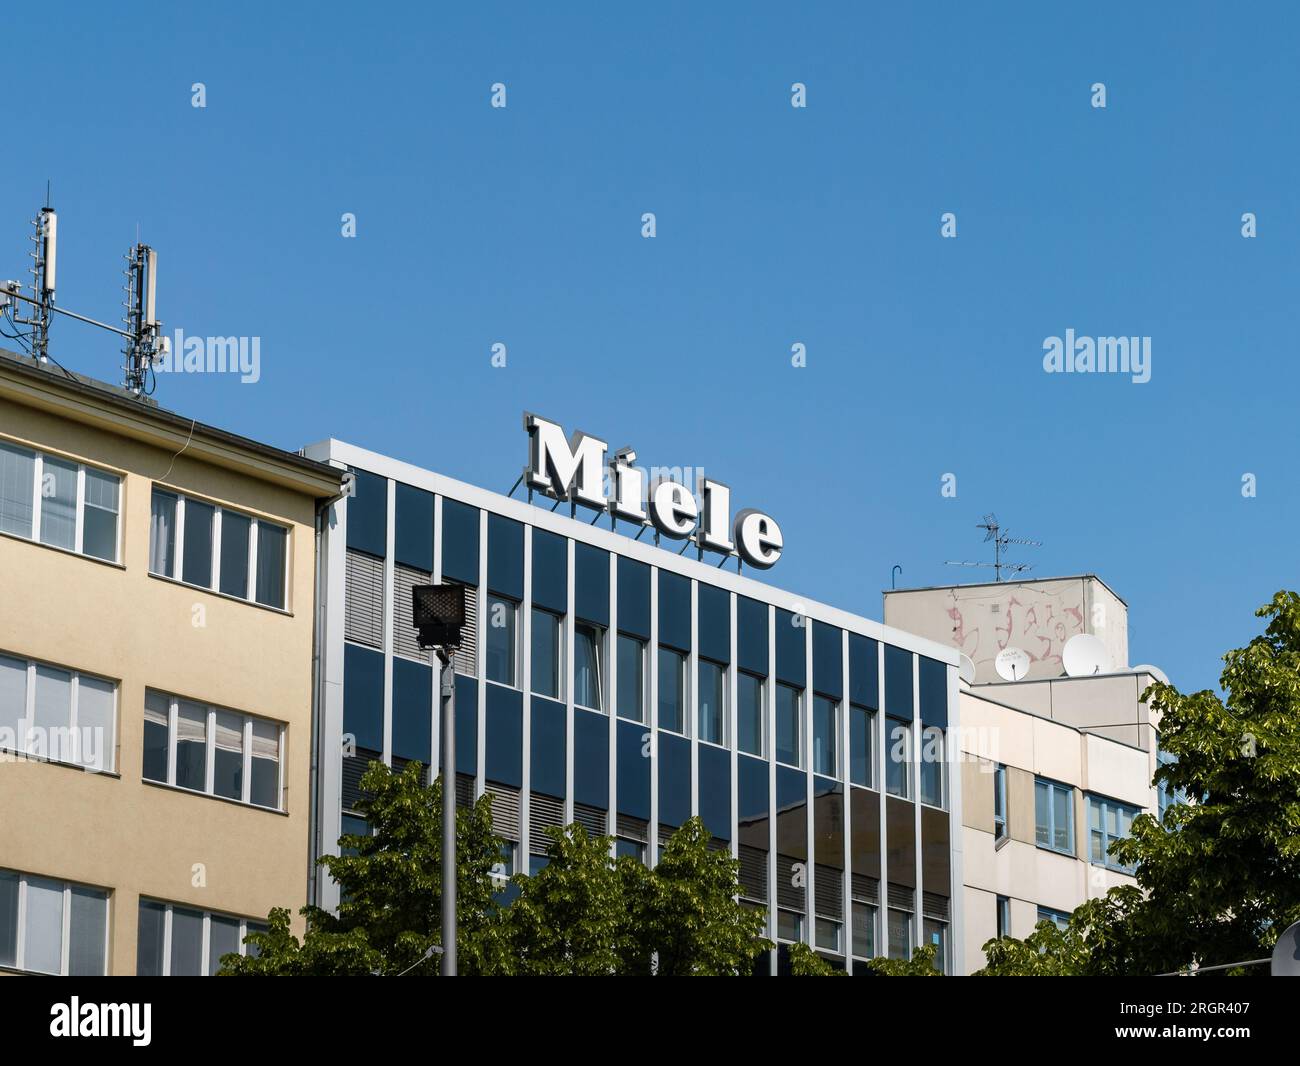 Logo miele su un edificio della città. Segno del famoso marchio tedesco per elettrodomestici come lavatrici, lavastoviglie e altri prodotti. Foto Stock